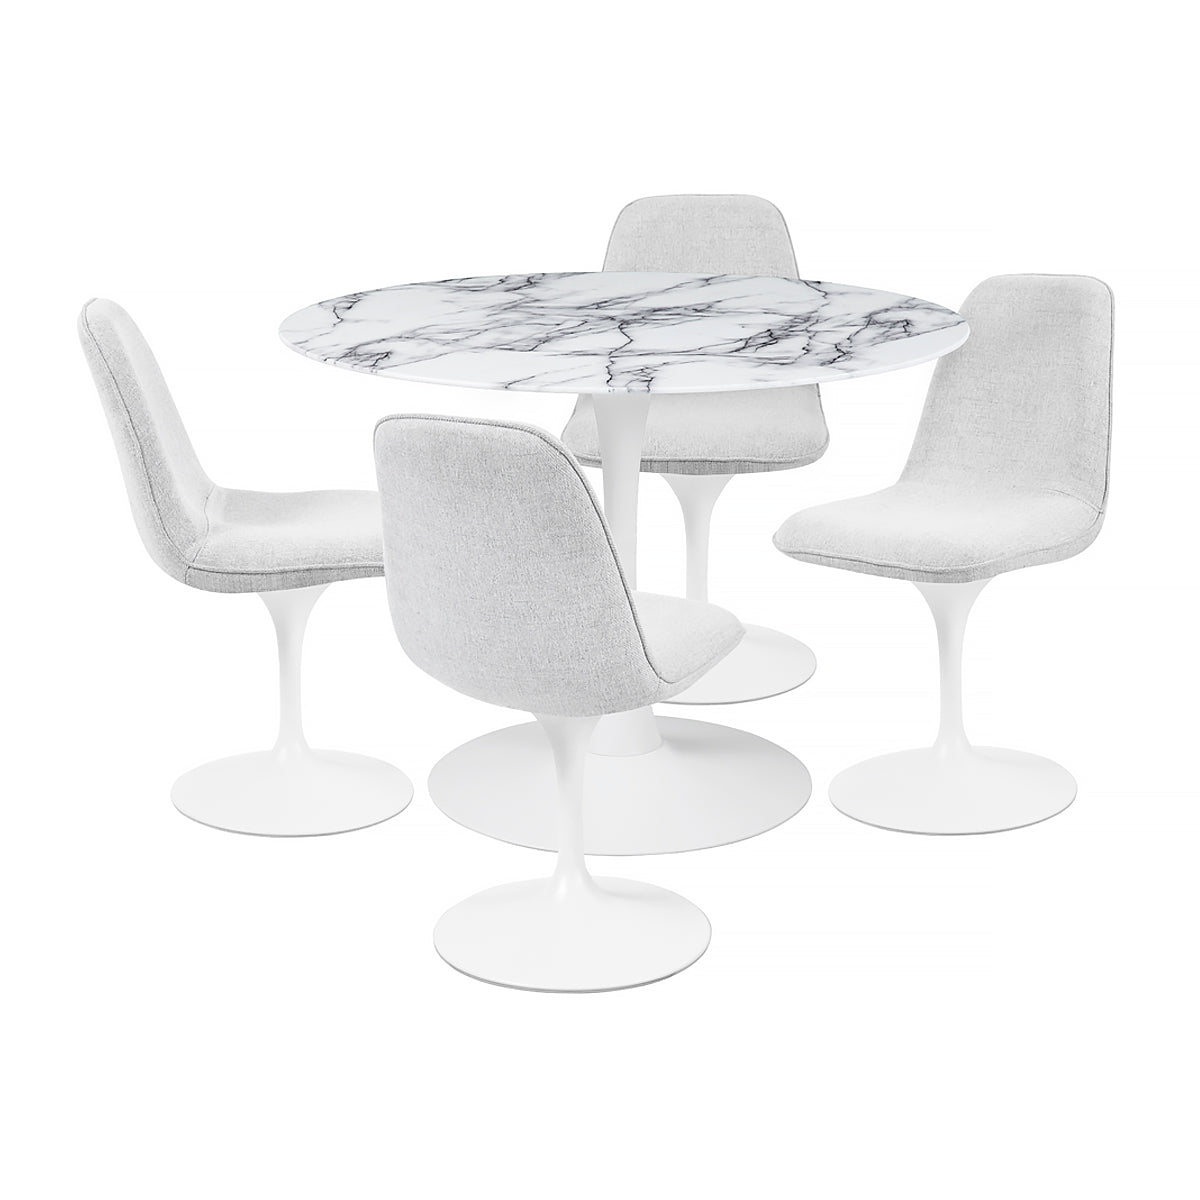 Chaise pivotante avec assise et dossier rembourrés recouverts de tissu blanc gris clair, base ronde en métal avec revêtement en epoxy blanc - LORA